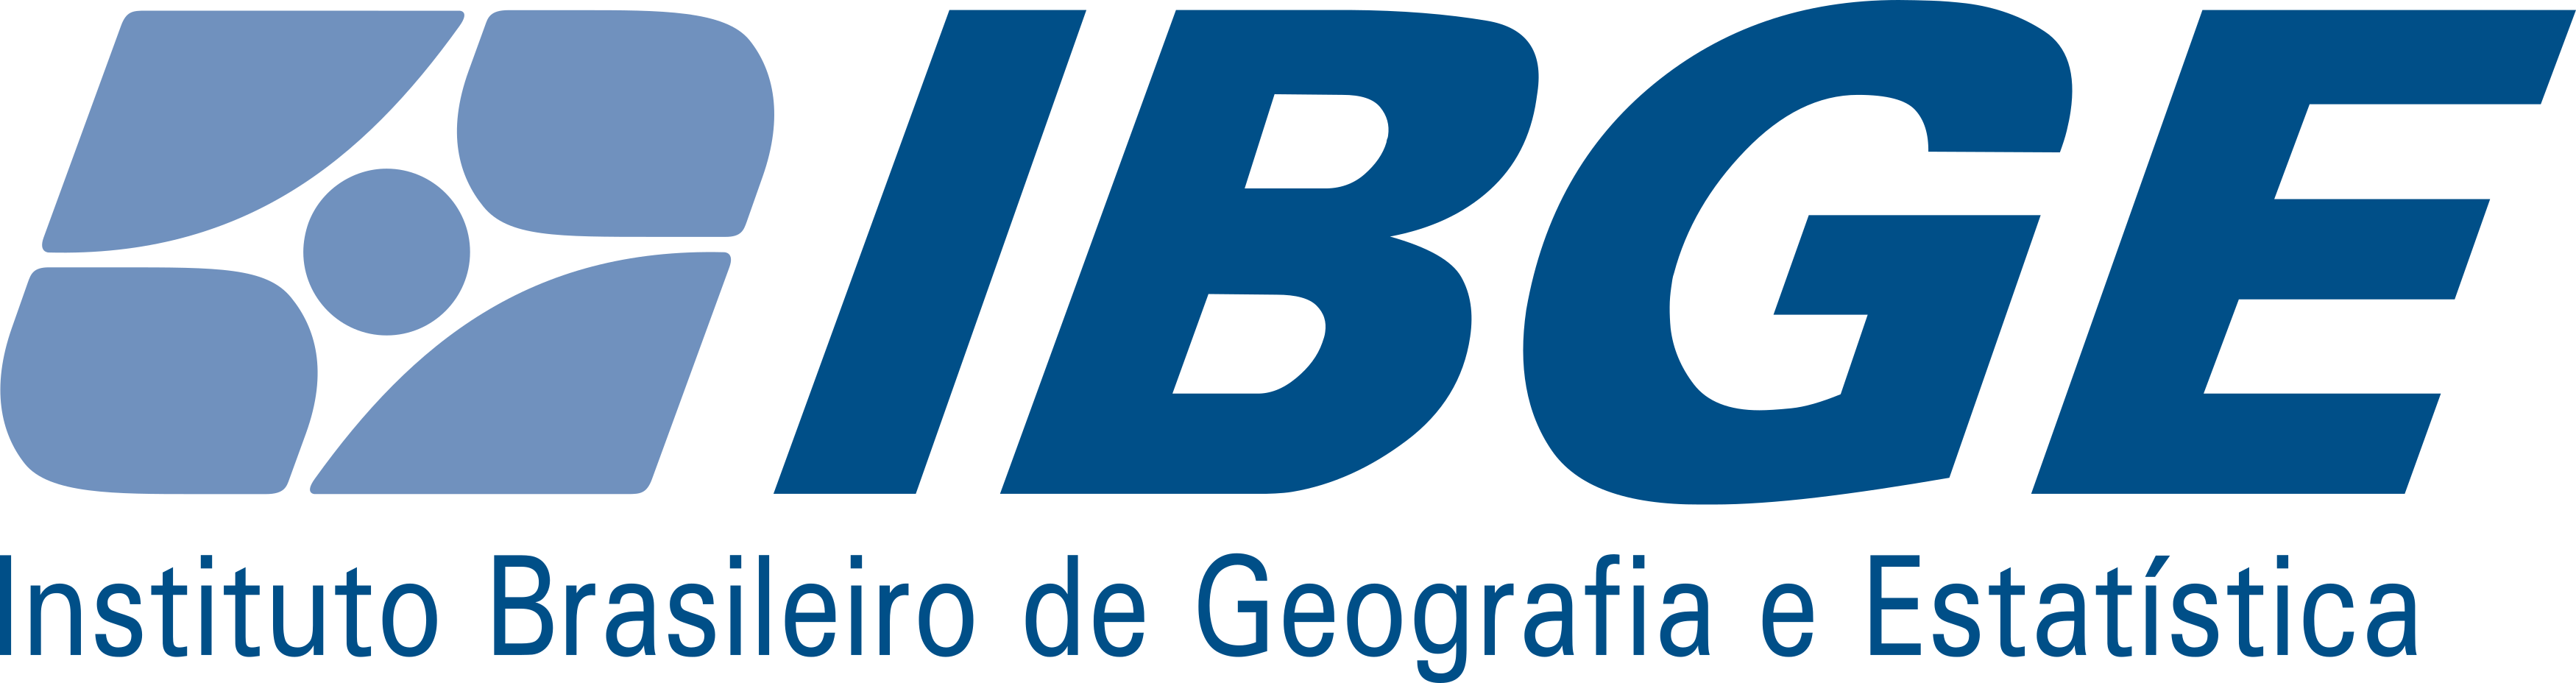 ibge-logo.png